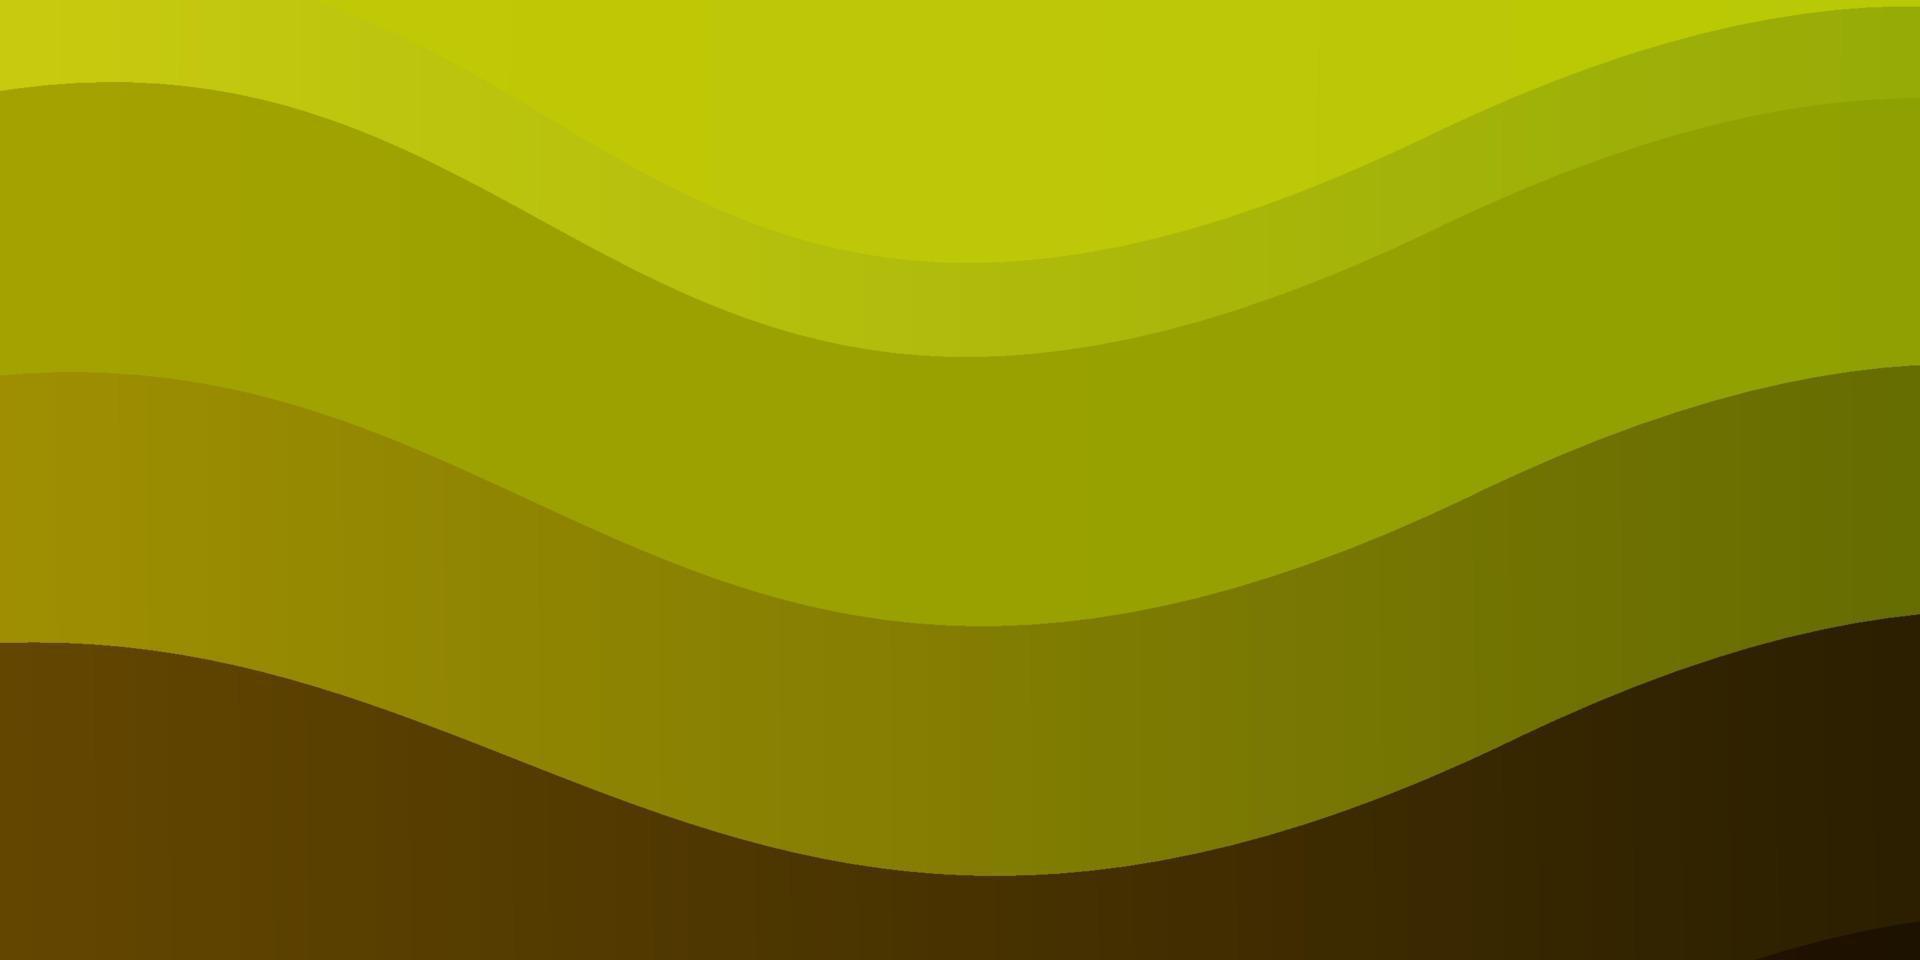 layout vettoriale verde chiaro, giallo con linee ironiche.